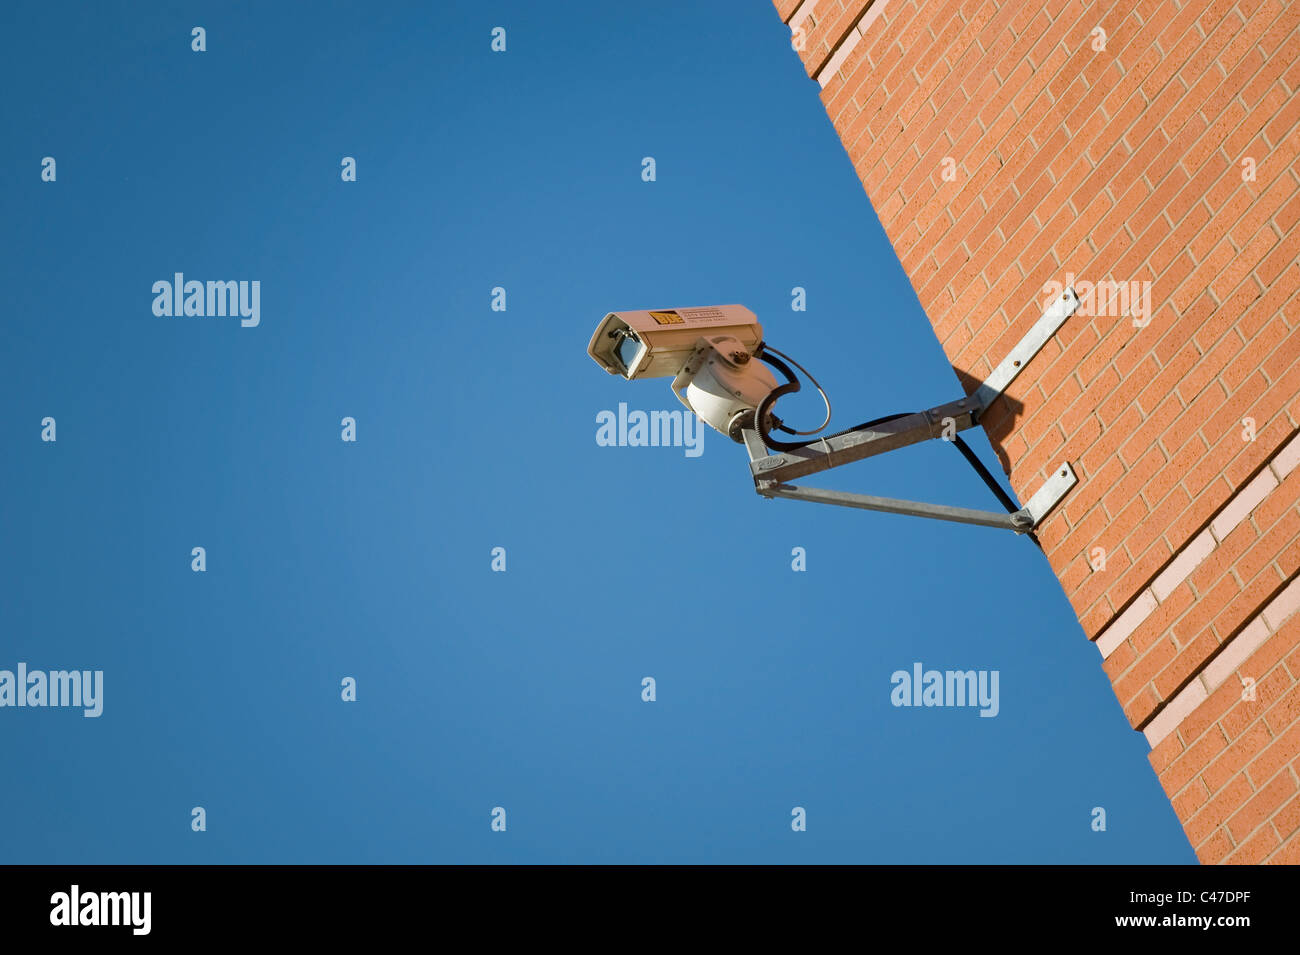 Una cámara CCTV conectados a una pared de ladrillos en un cielo claro y brillante día. Foto de stock